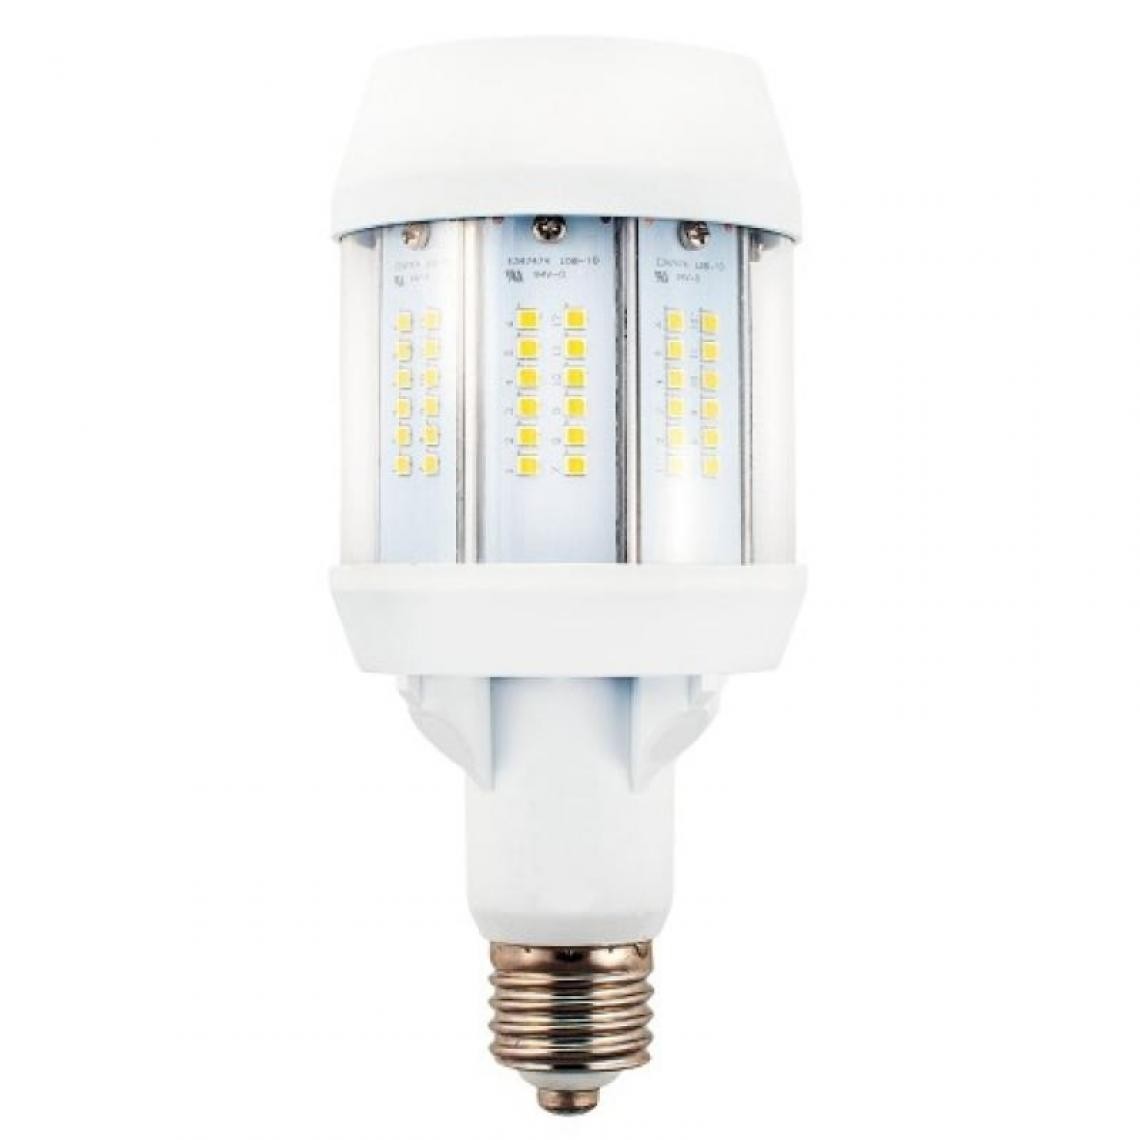 Ge Lighting - Lampe LED Mercure E27 3000°K 35 W - Ampoules LED